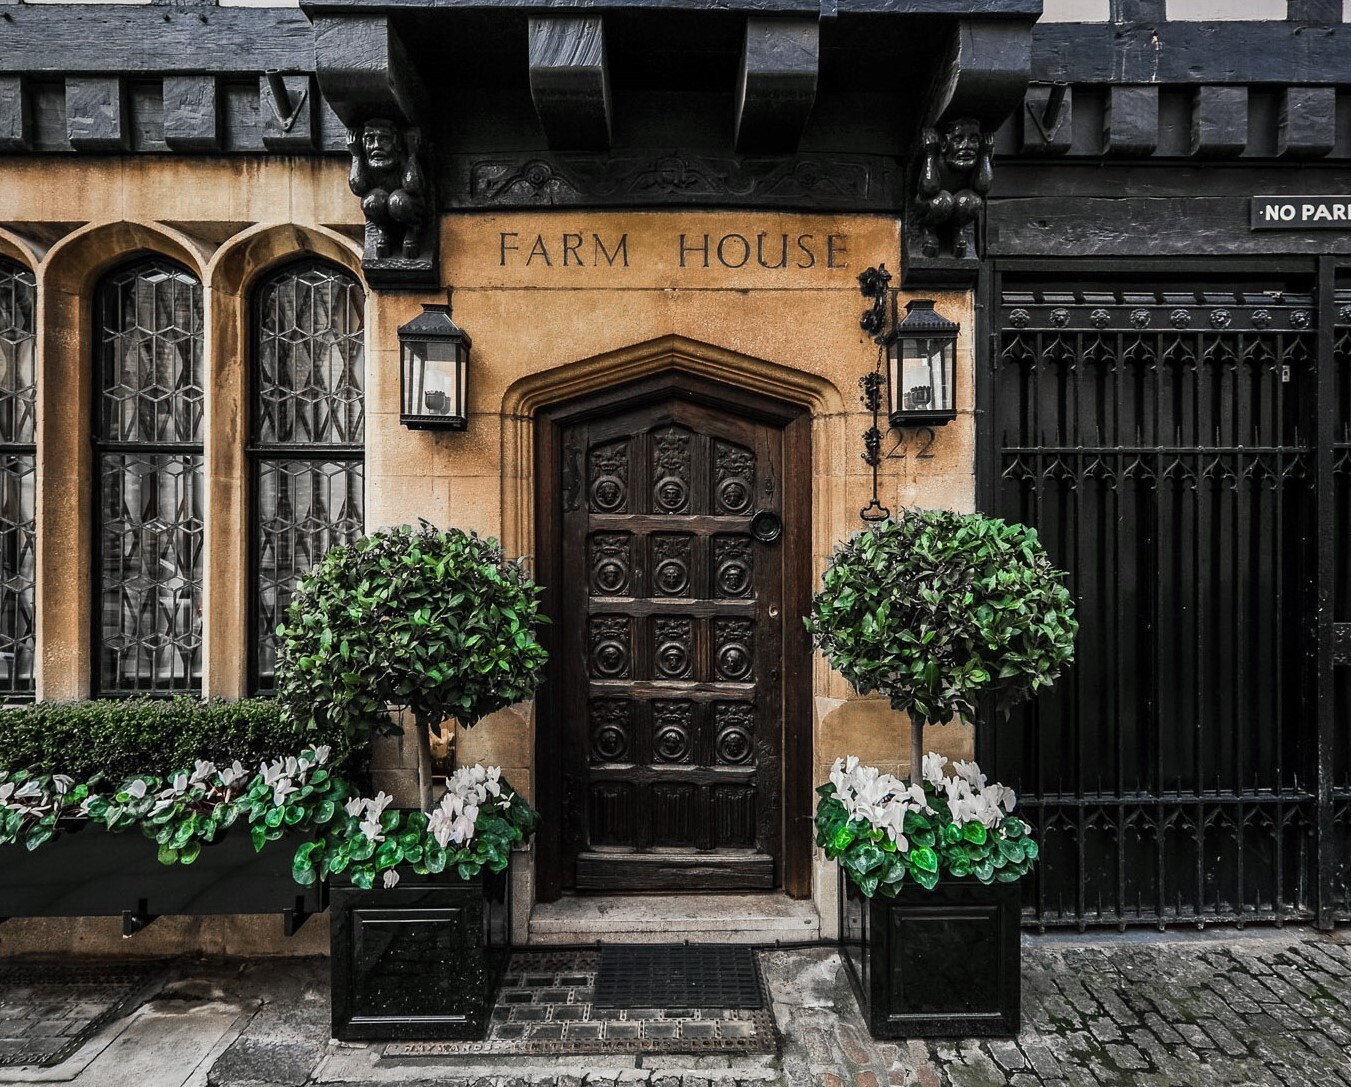 Farm House, Mayfair, London